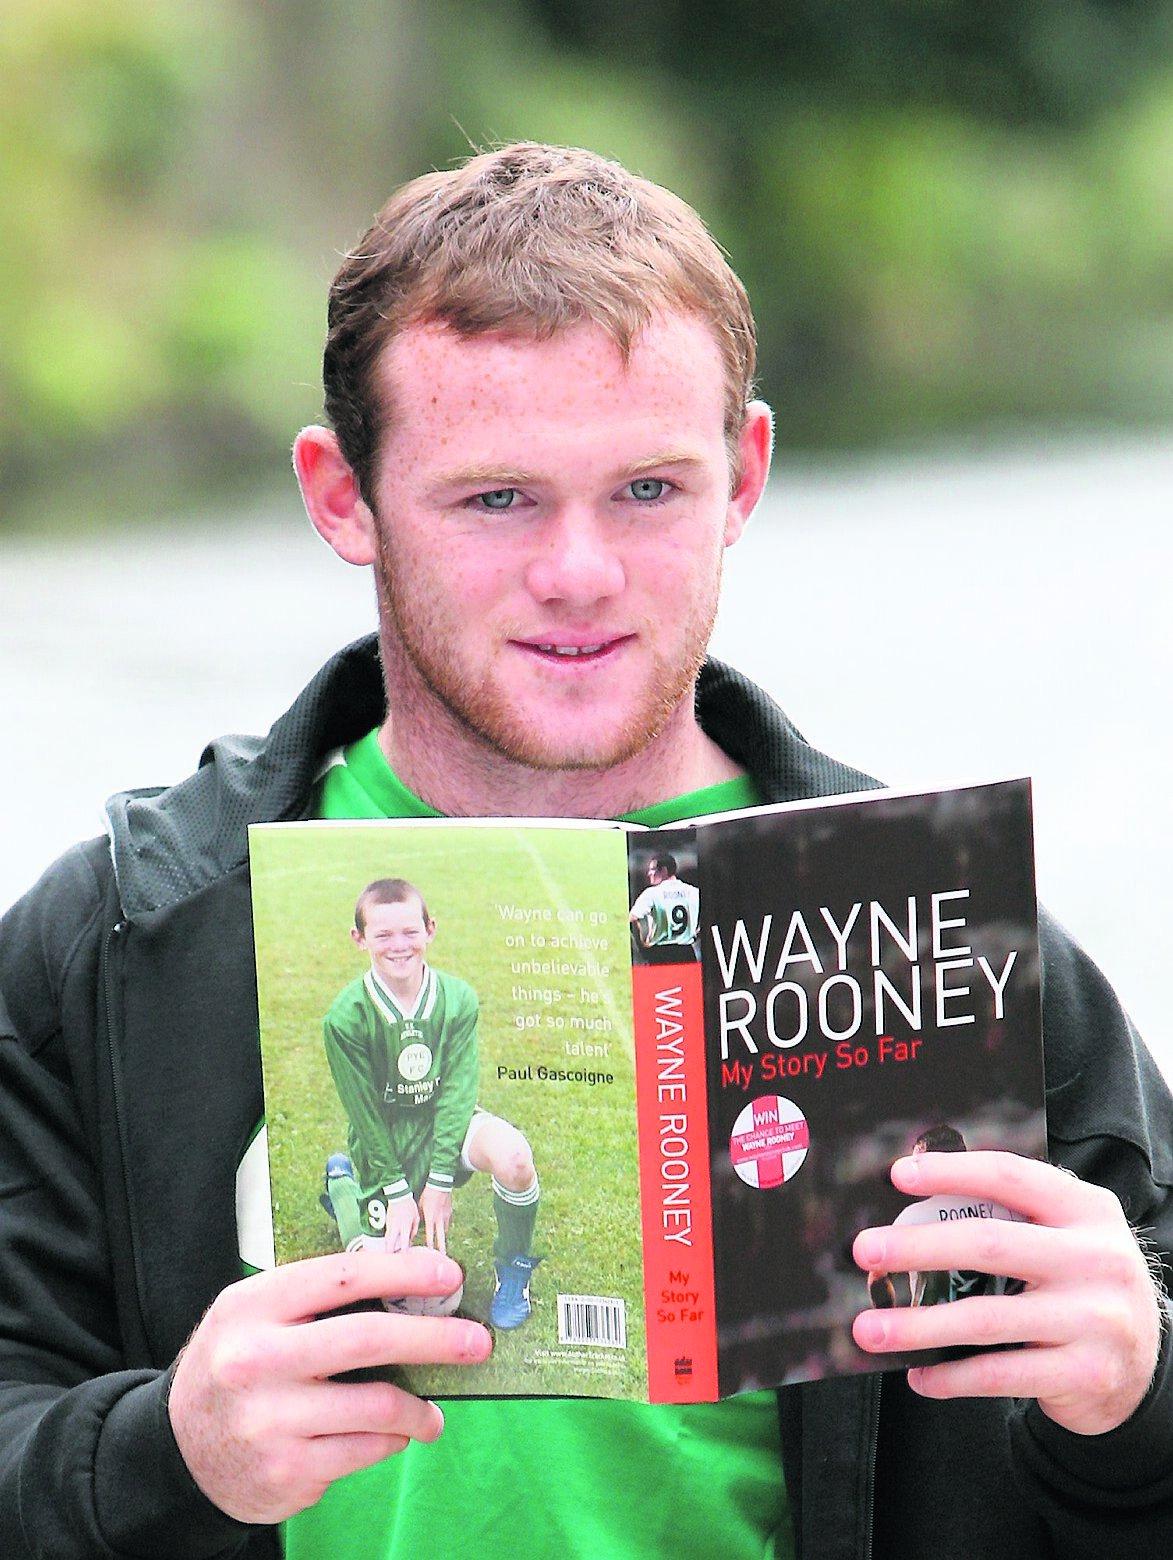 I Storbritannien kampanjar fotbollsspelaren Wayne Rooney för att få unga att läsa – här med sin egen självbiografi. Även i Sverige behövs förebilder för att främja litteraturintresset, enligt FP.